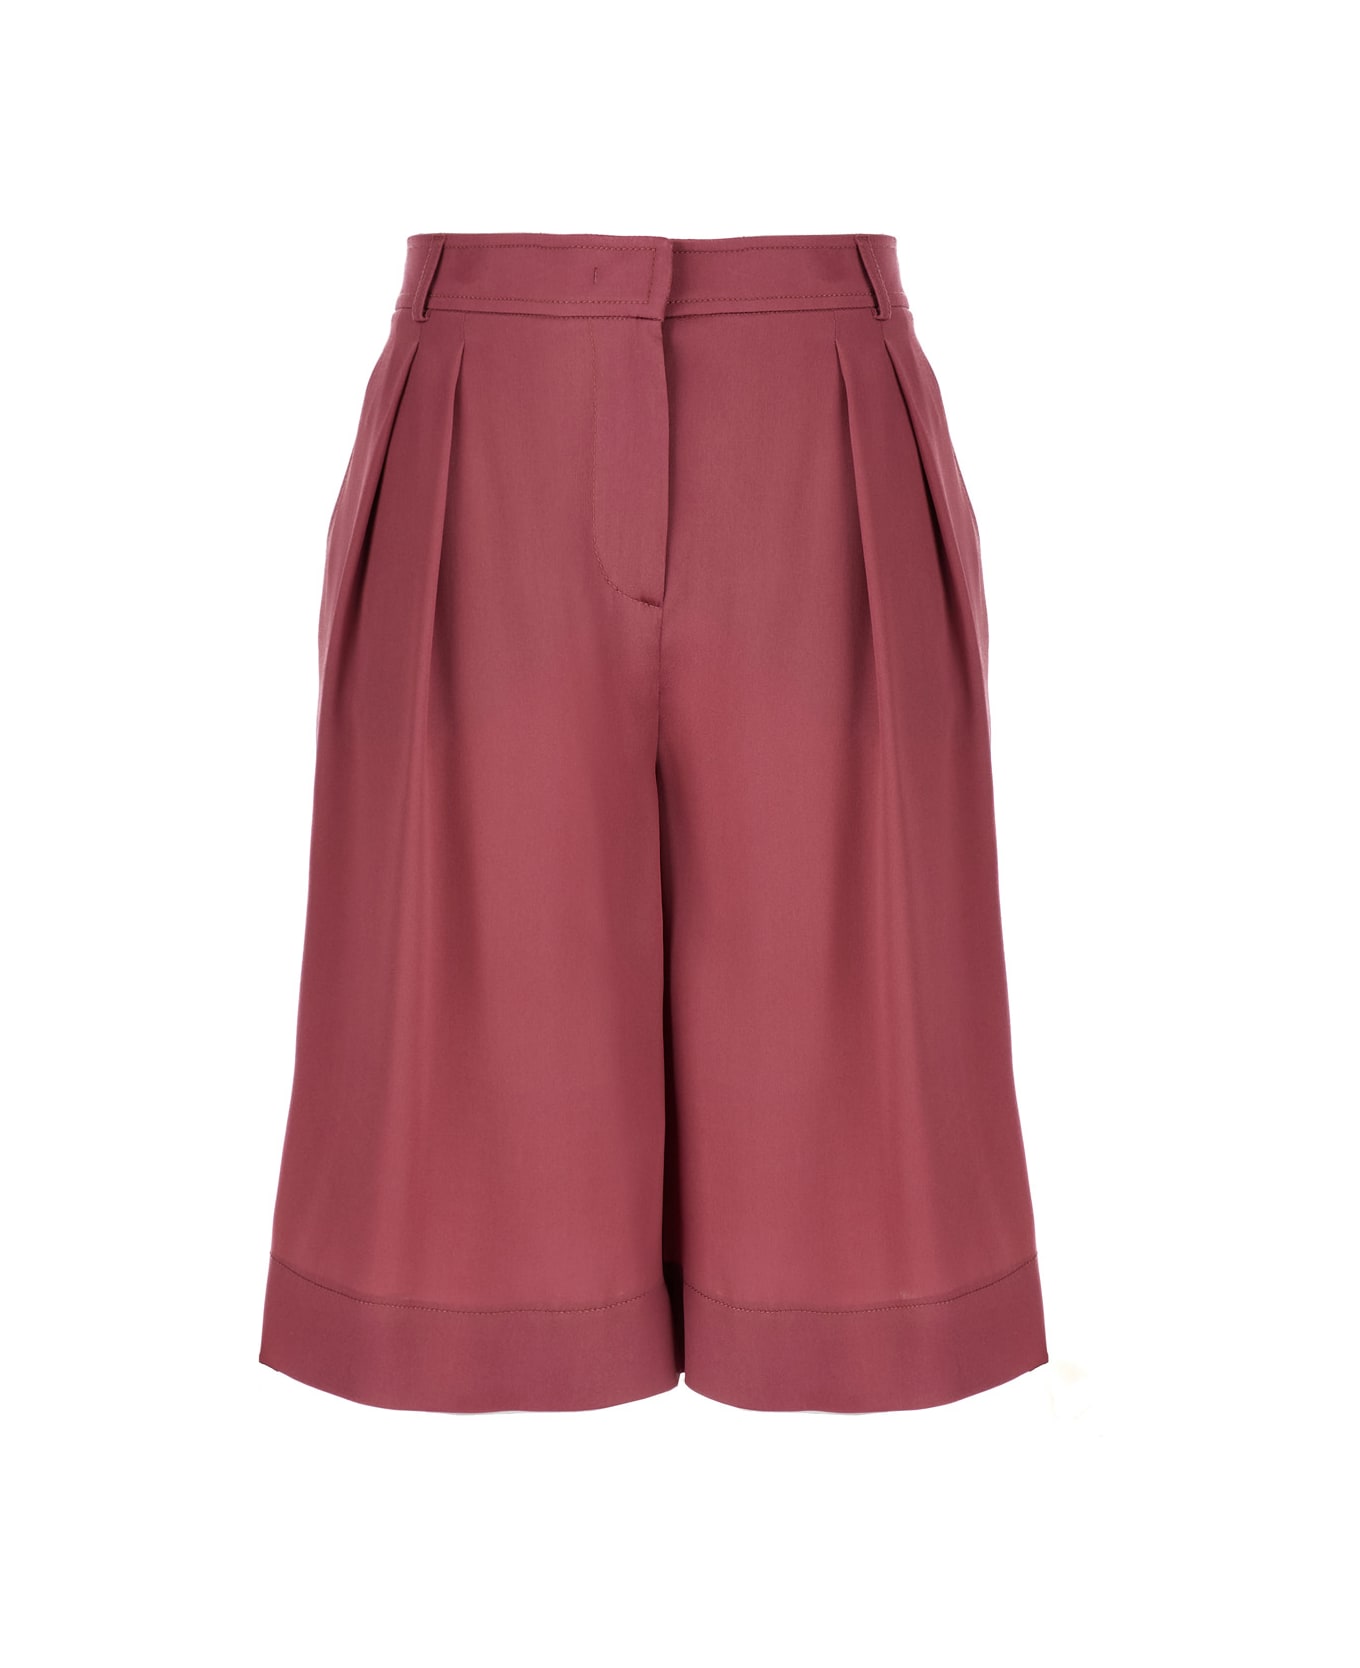 Alberta Ferretti Pink Satin Knee Shorts In Silk Blend Woman - Pink